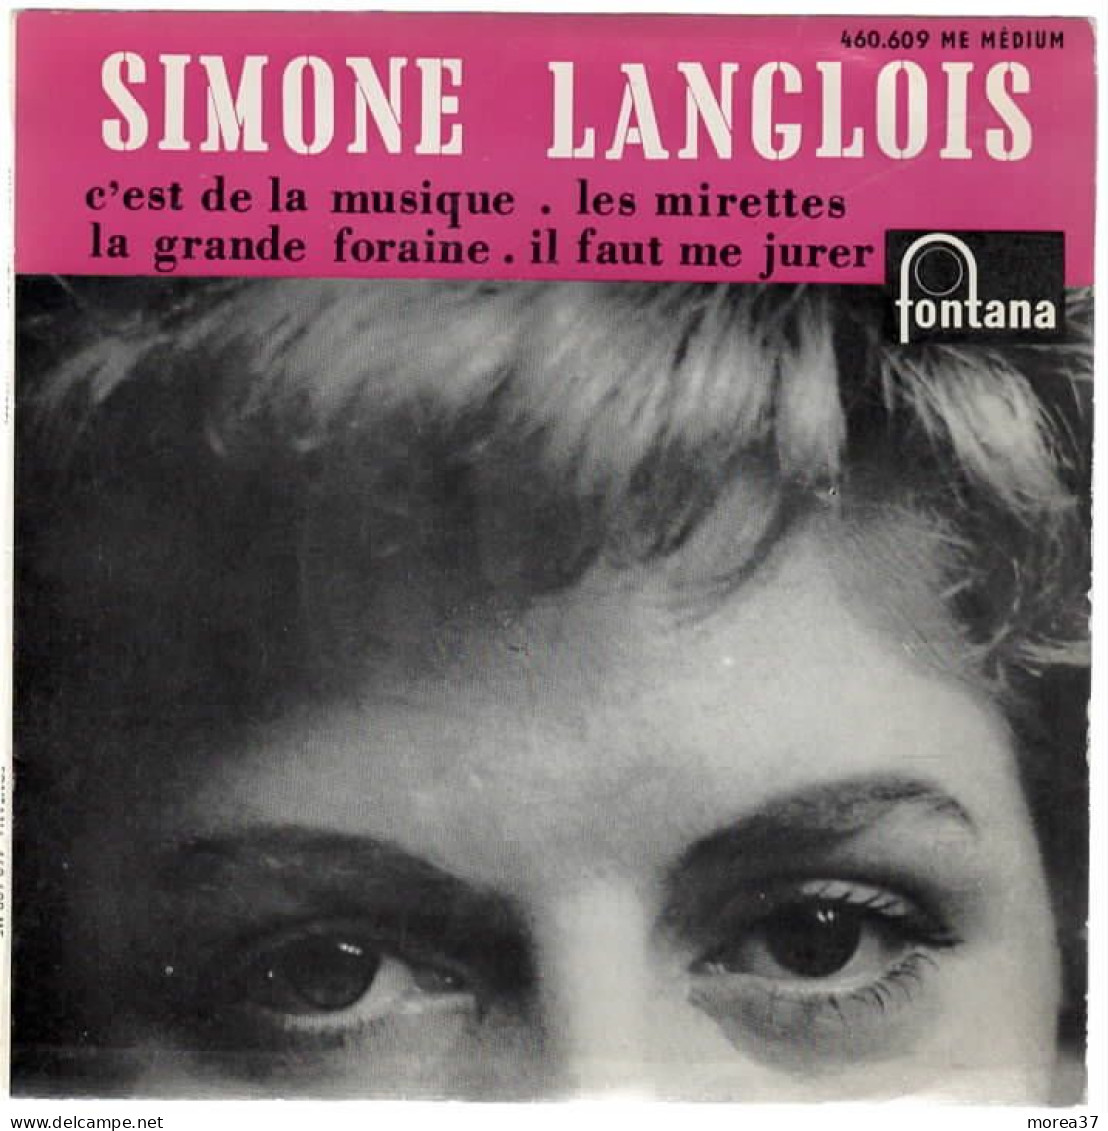 SIMONE LANGLOIS   Les Mirettes    FONTANA  460.609 ME - Sonstige - Franz. Chansons